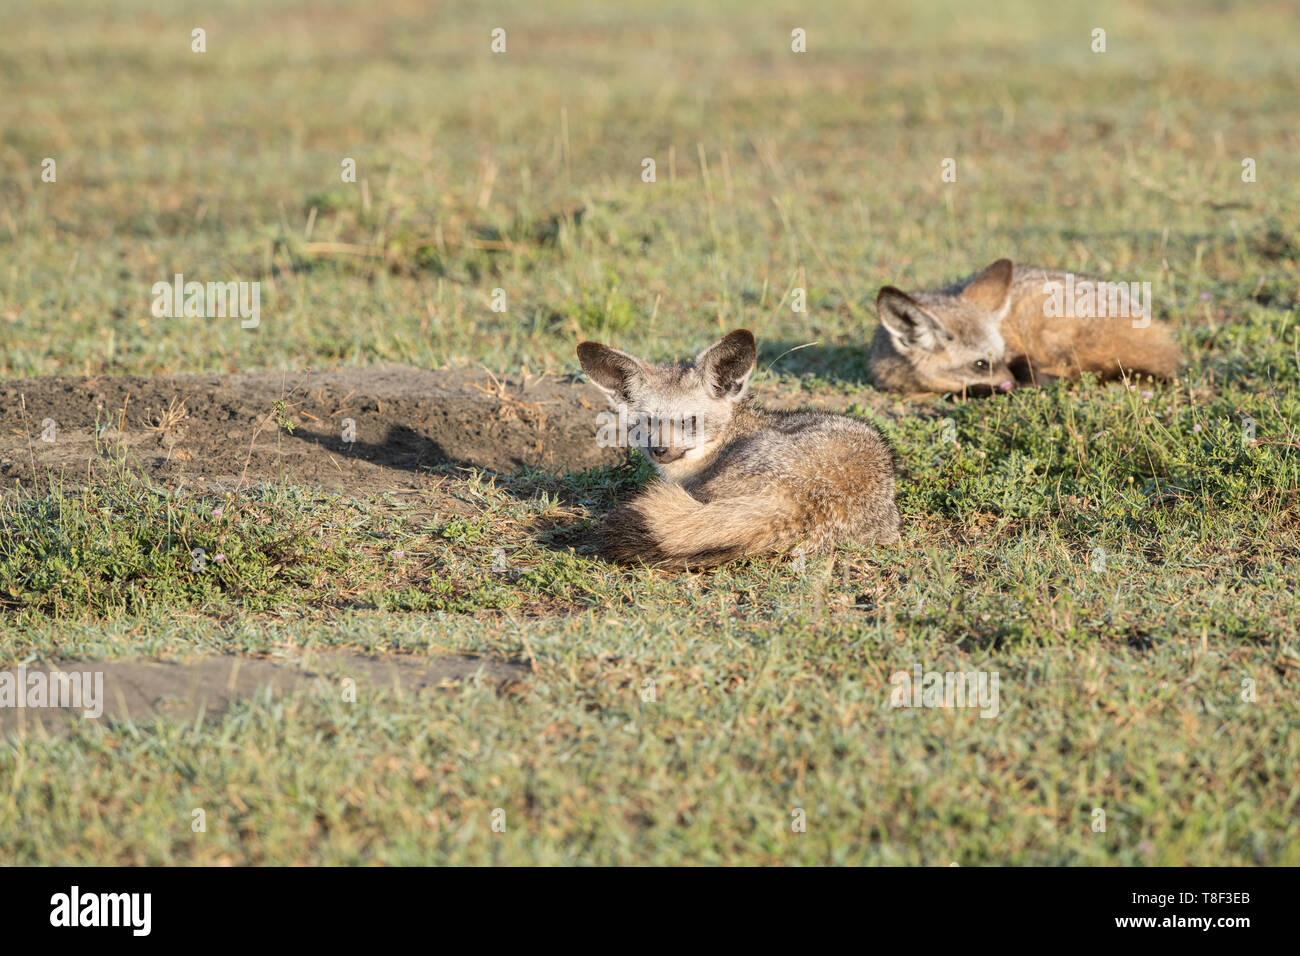 Bat-eared foxes à den site, Tanzanie Banque D'Images